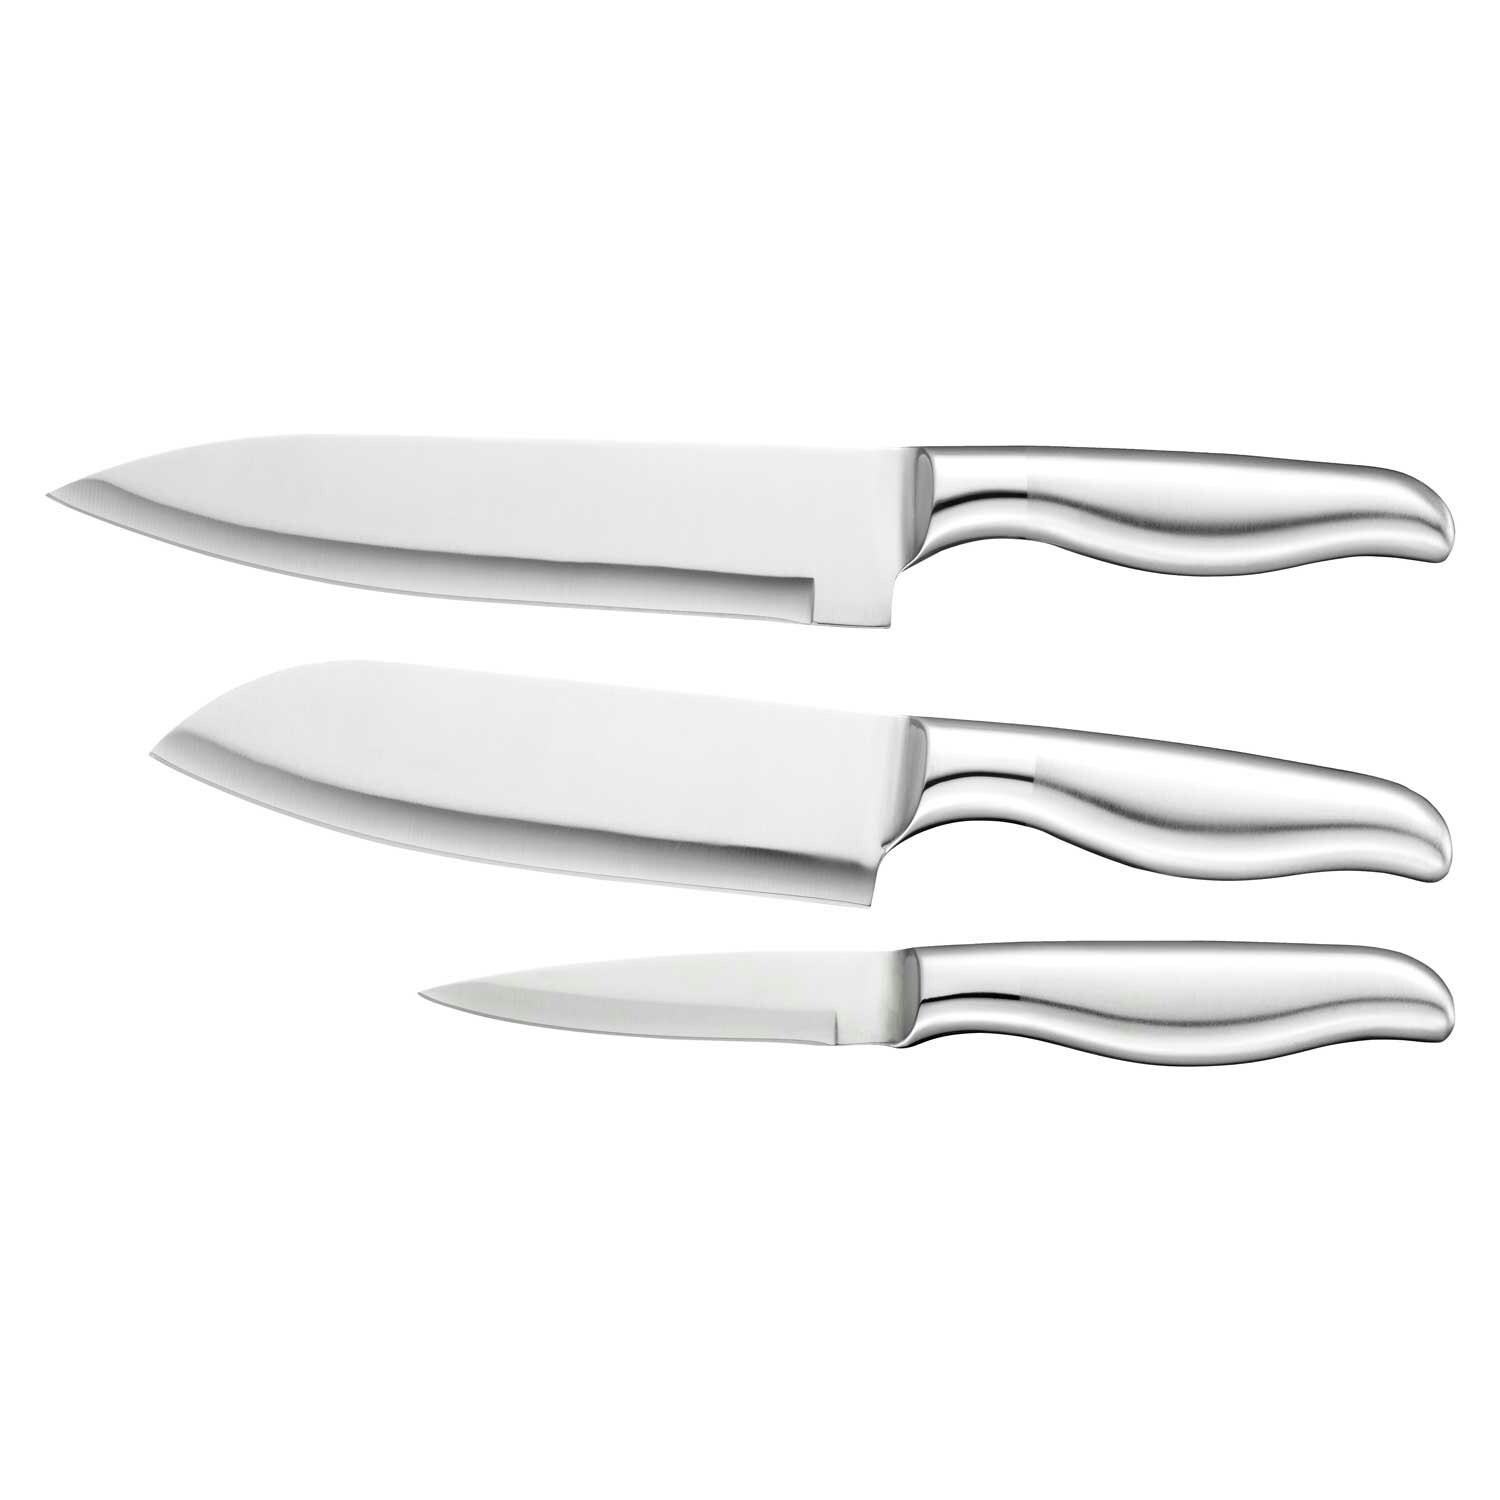 https://royaldesign.com/image/2/dorre-kita-knife-set-3-pack-0